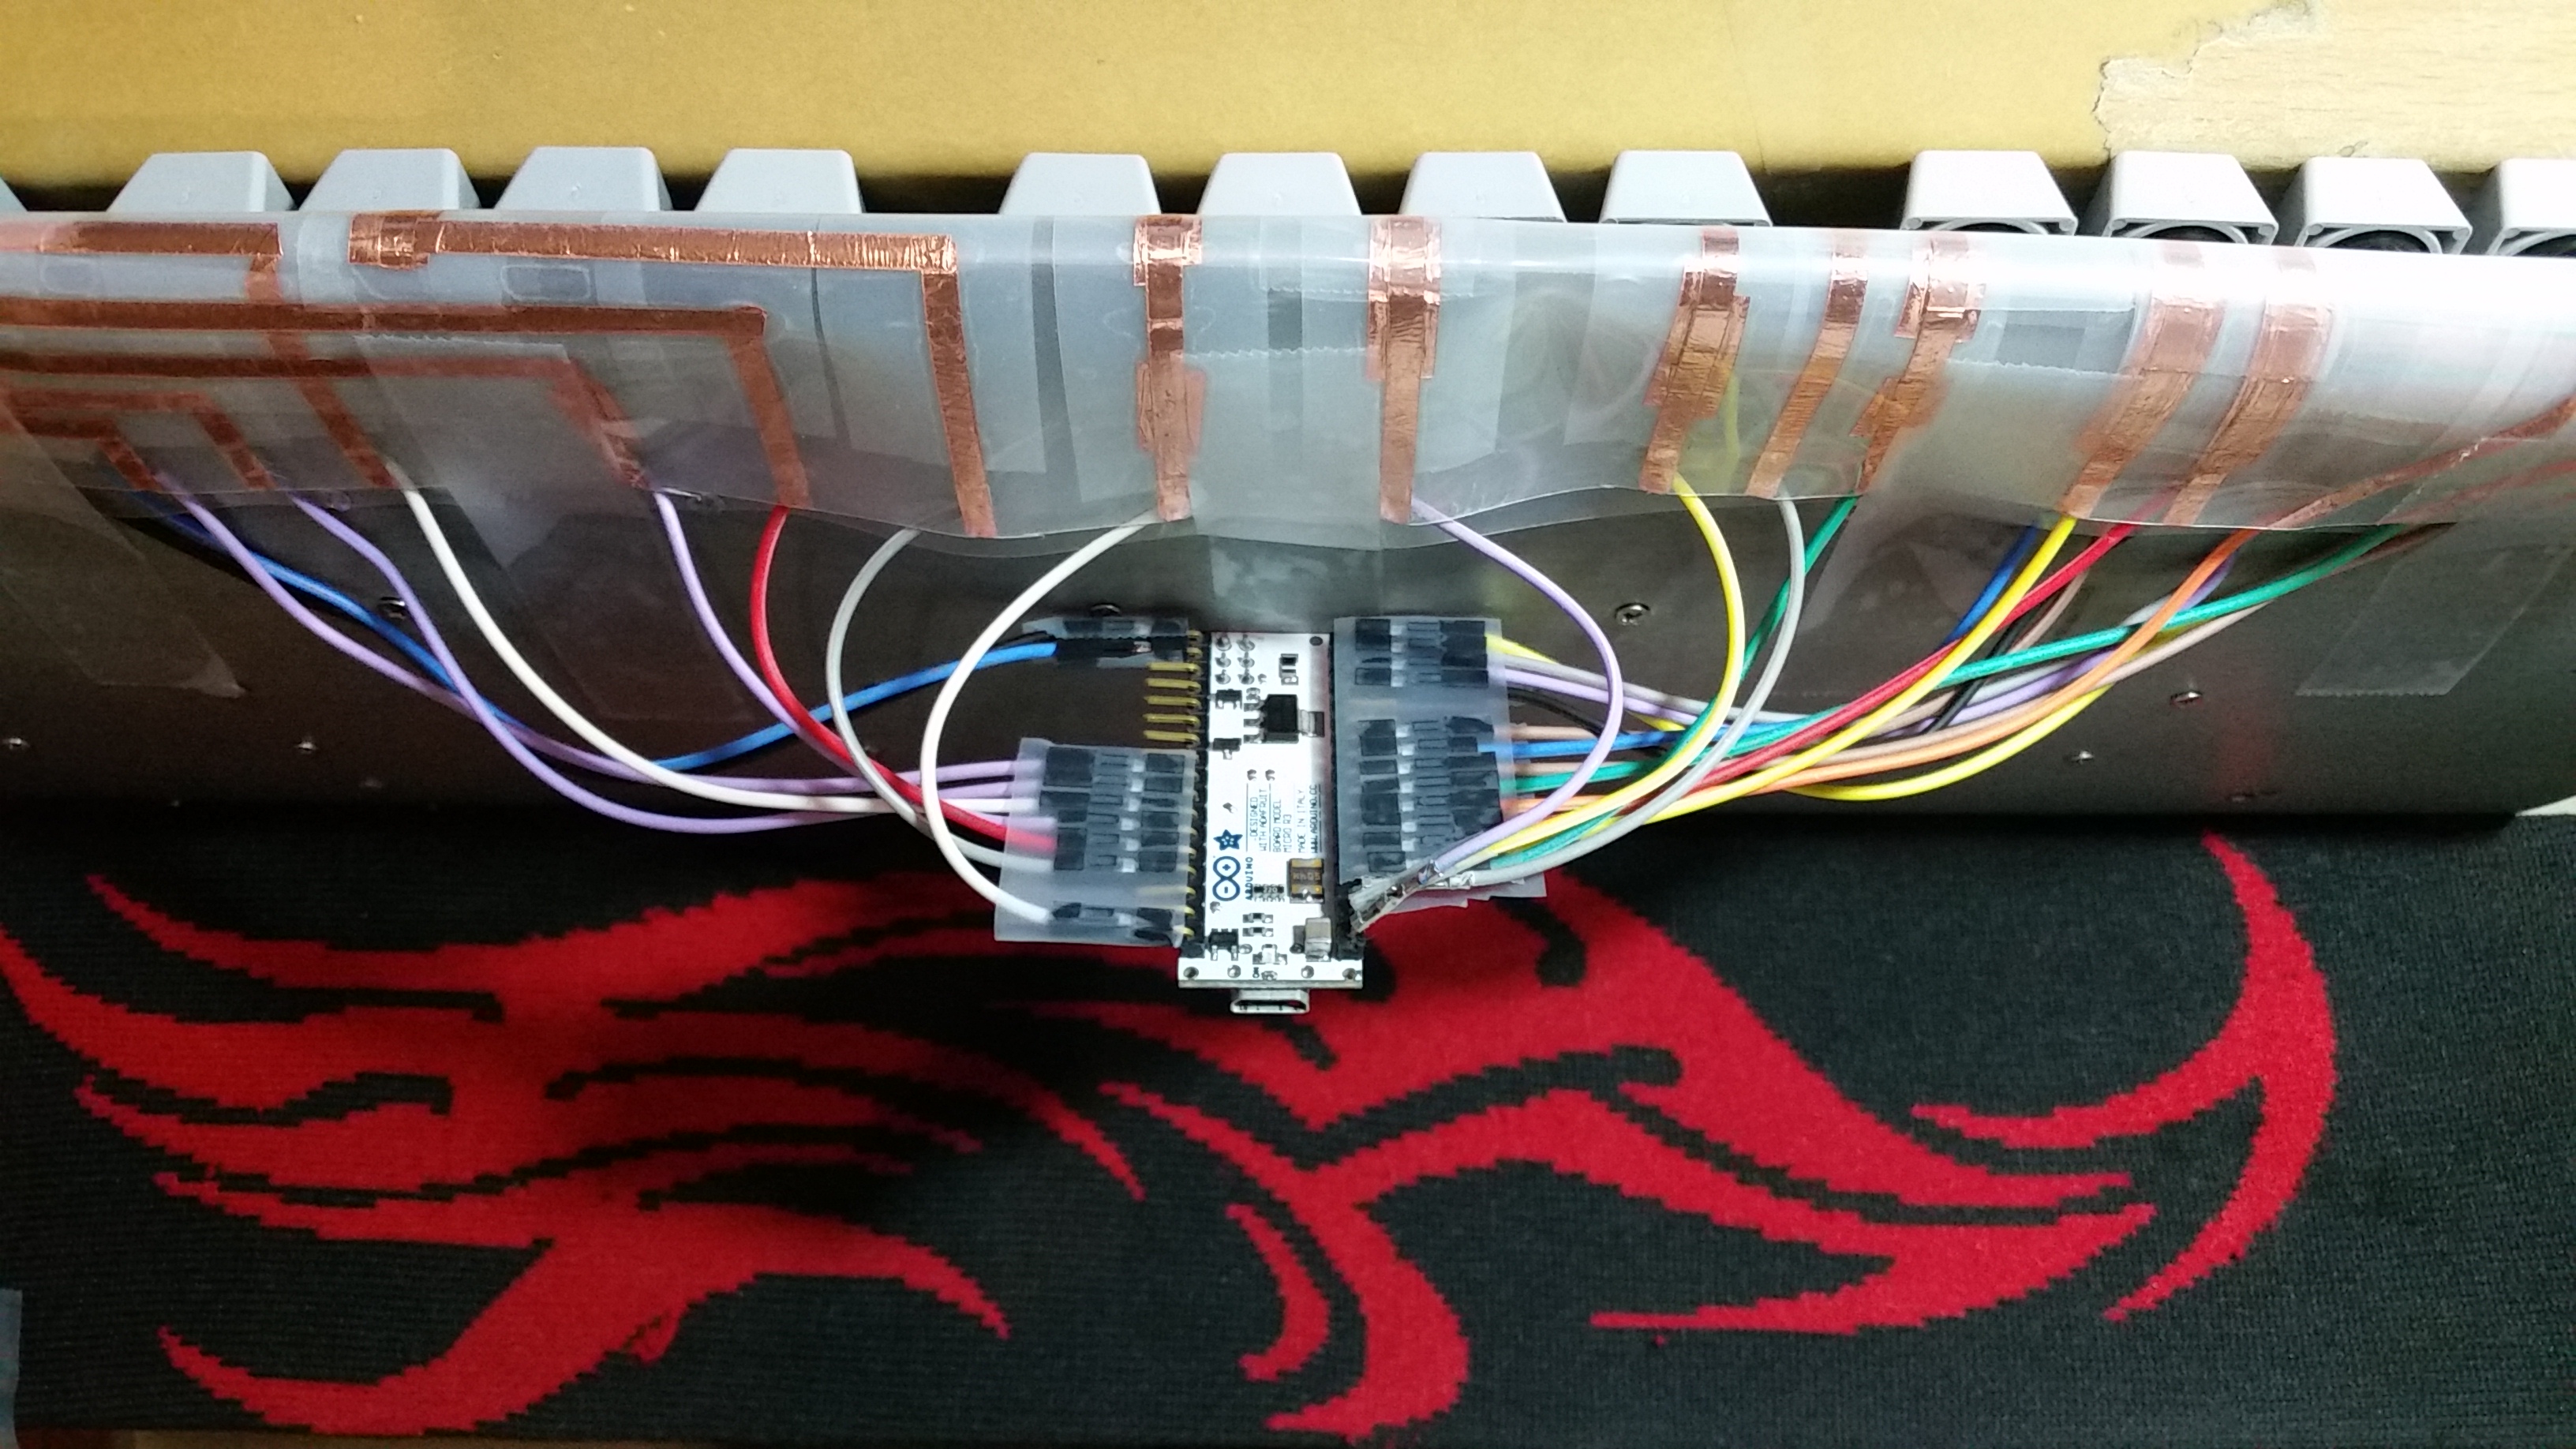 An Arduino Micro as its controller.